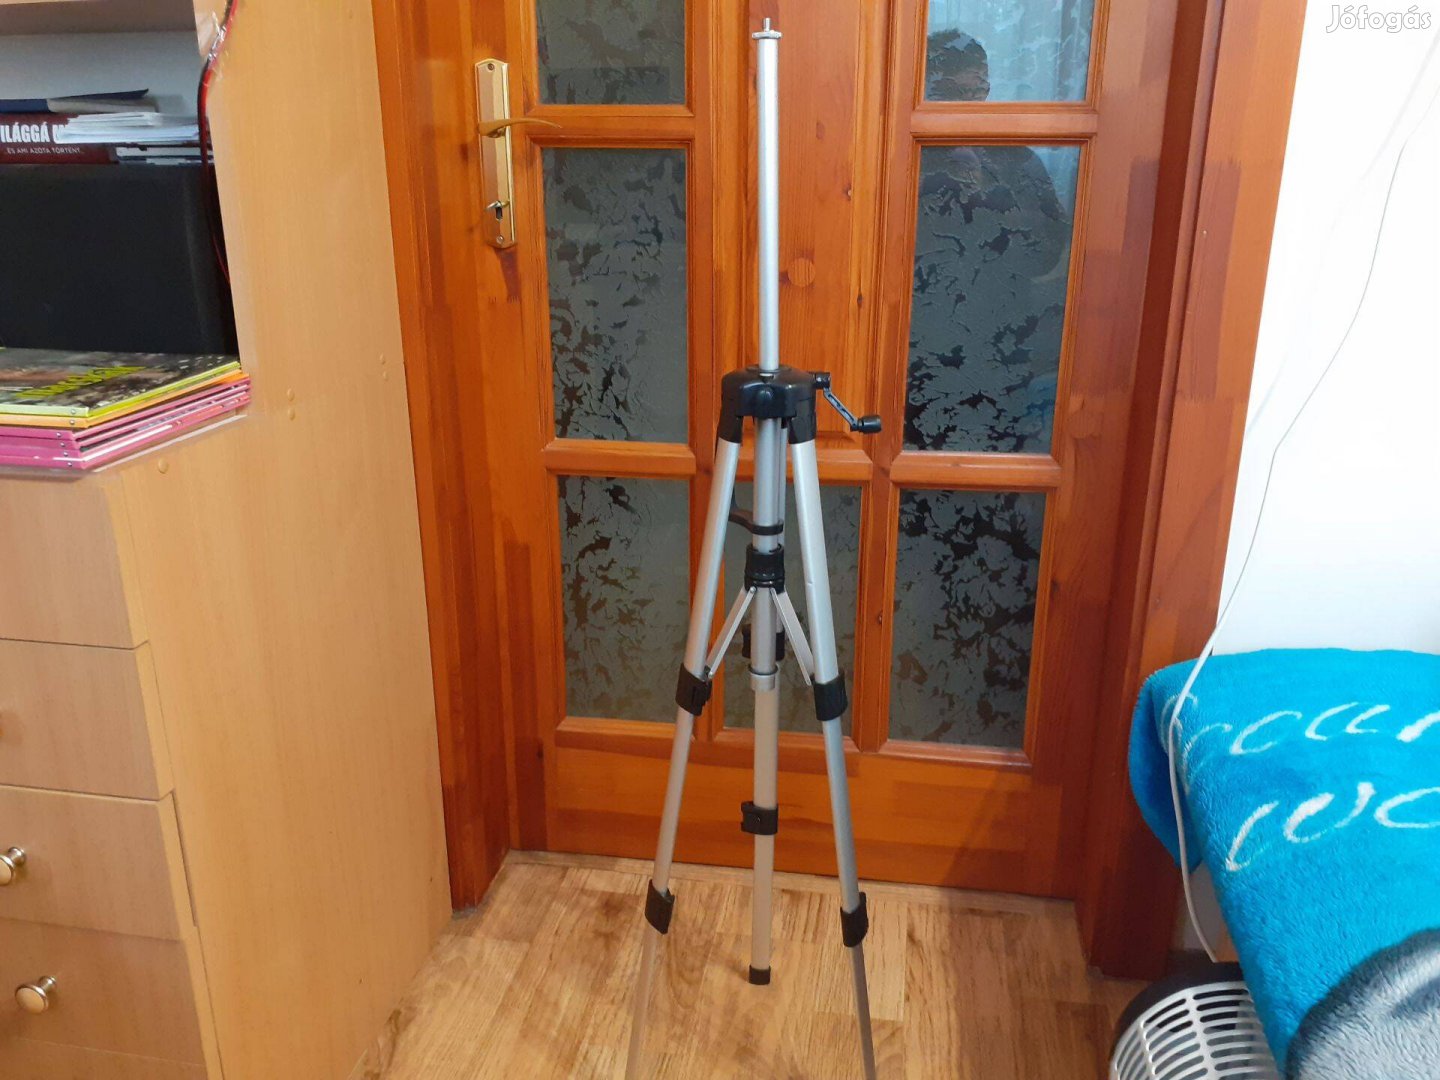 Fényképezőgép-, kameraállvány kitolható lábakkal vízmértékkel (110 cm)